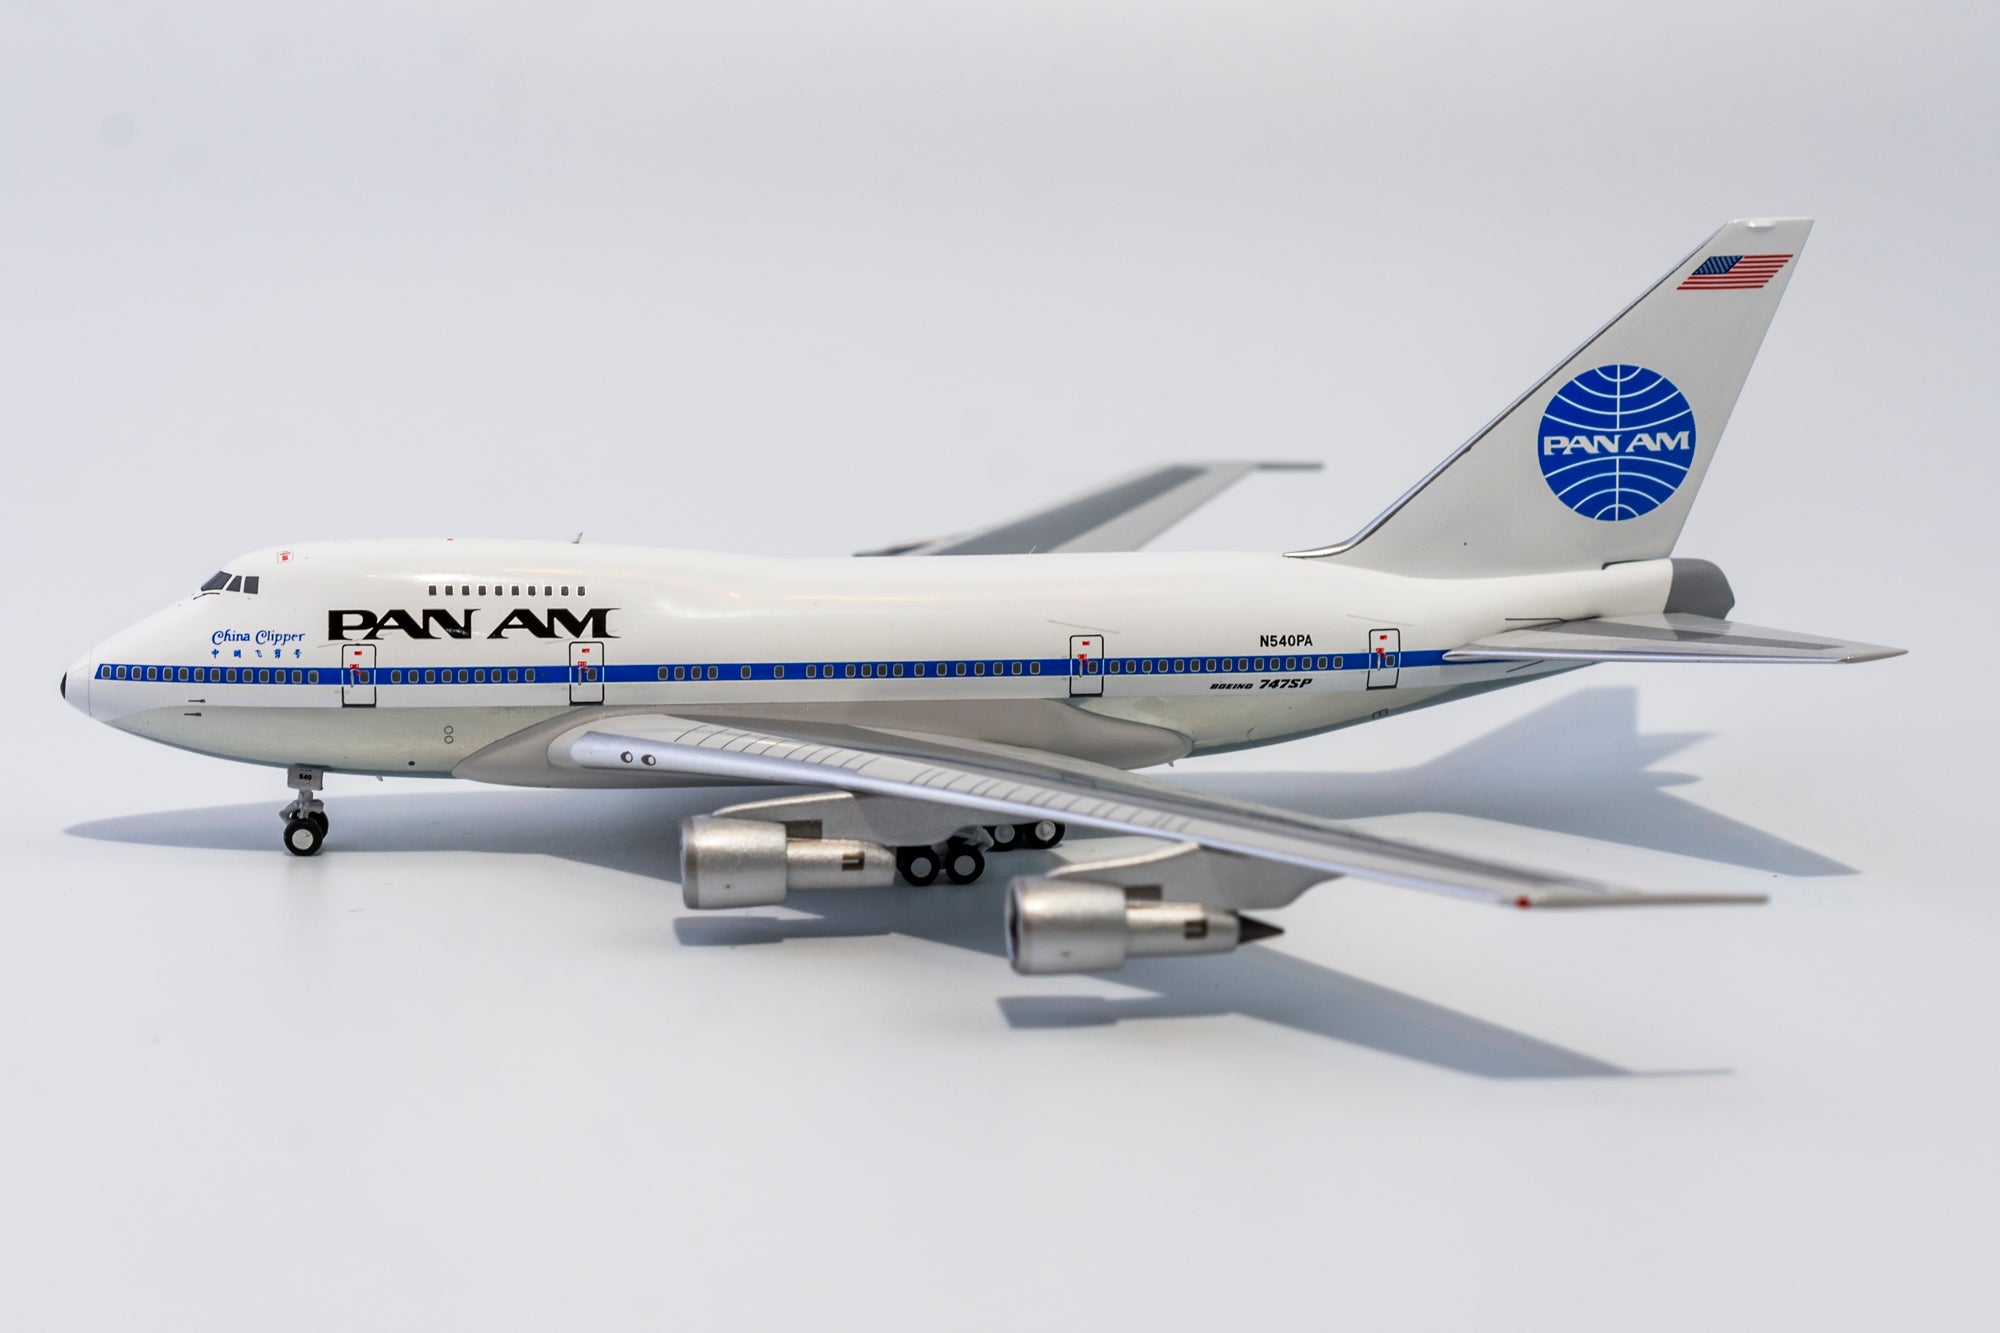 1:400 NG Models Pan American World Airways Boeing 747SP 